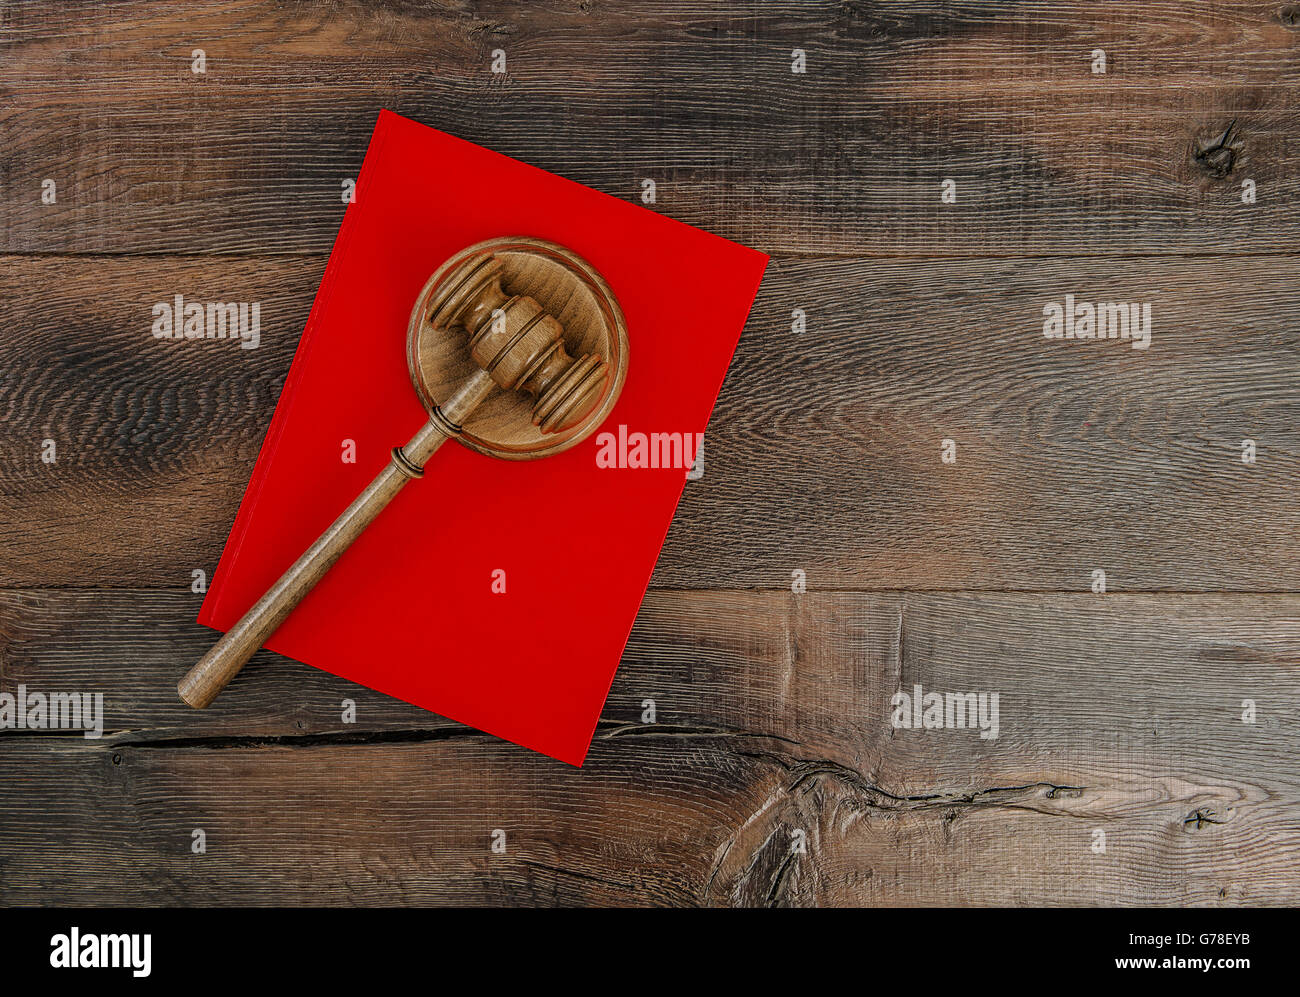 Richter-Hammer mit Resonanzboden und rote Buch. Hammer auf rustikalen hölzernen Hintergrund Stockfoto